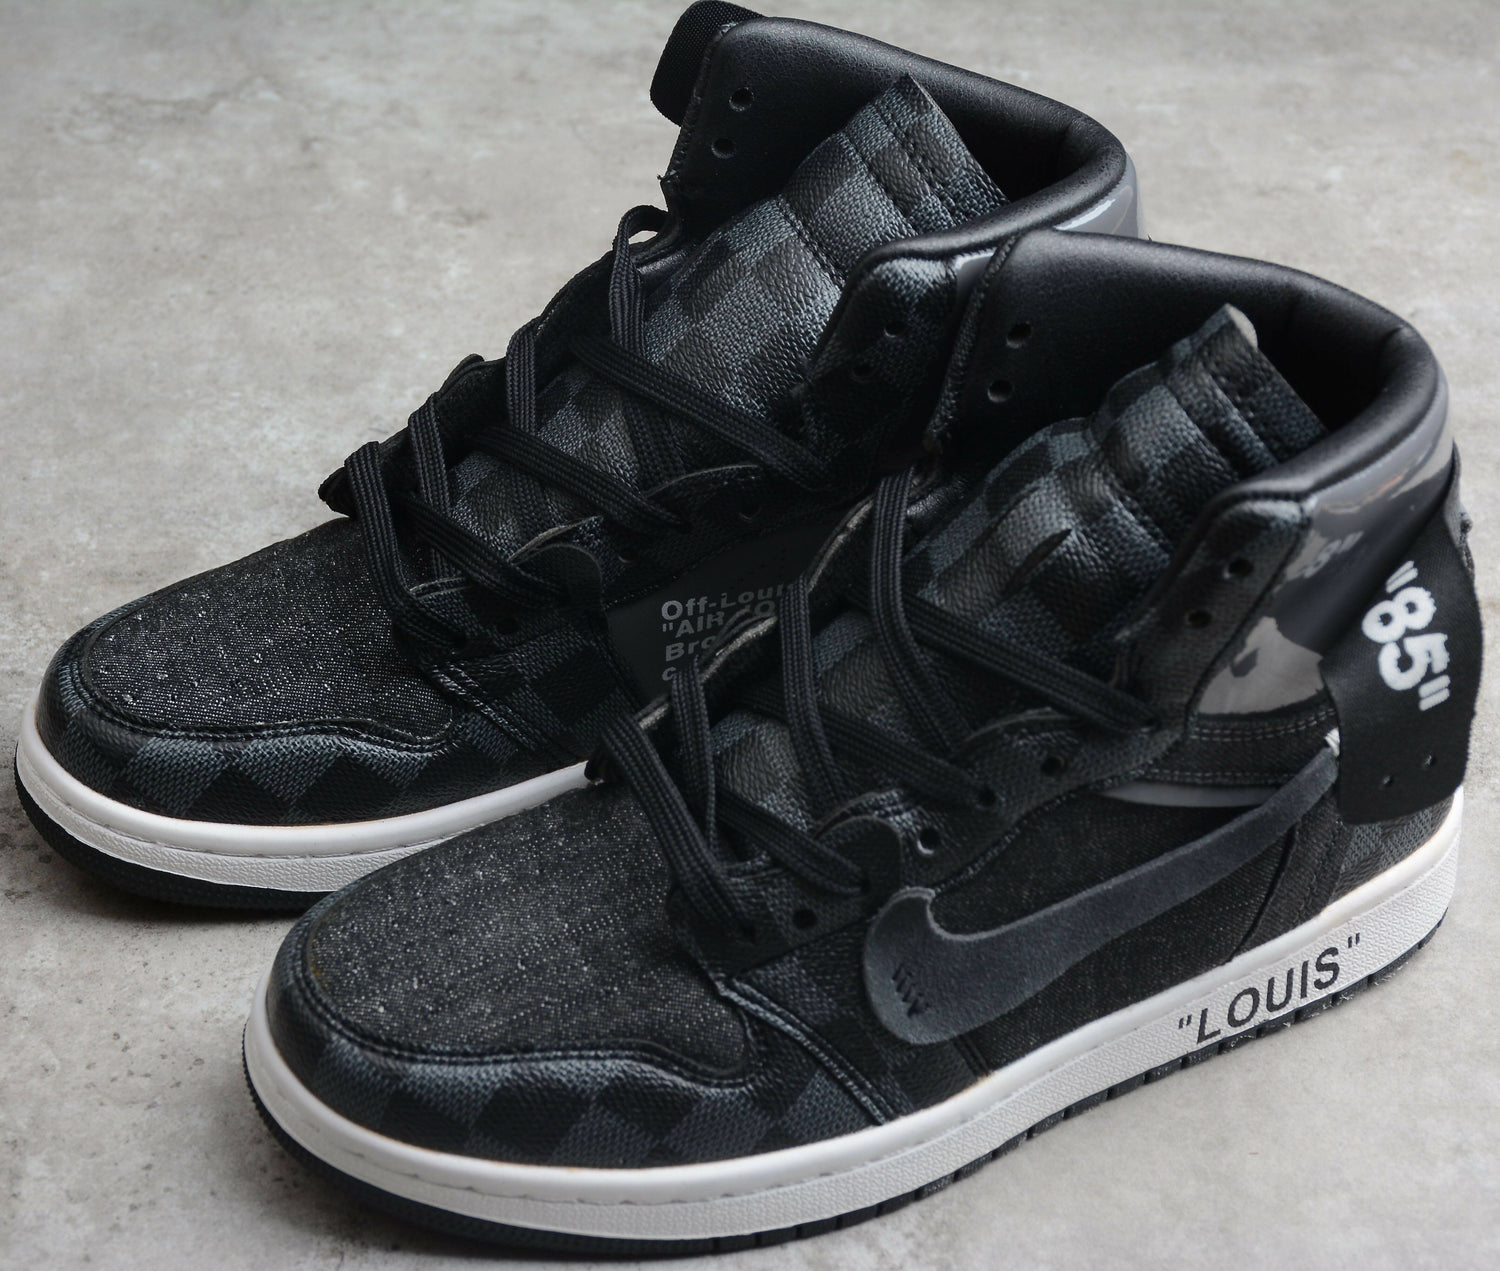 Black Off-Louis LV Nike Air Jordan 1 High